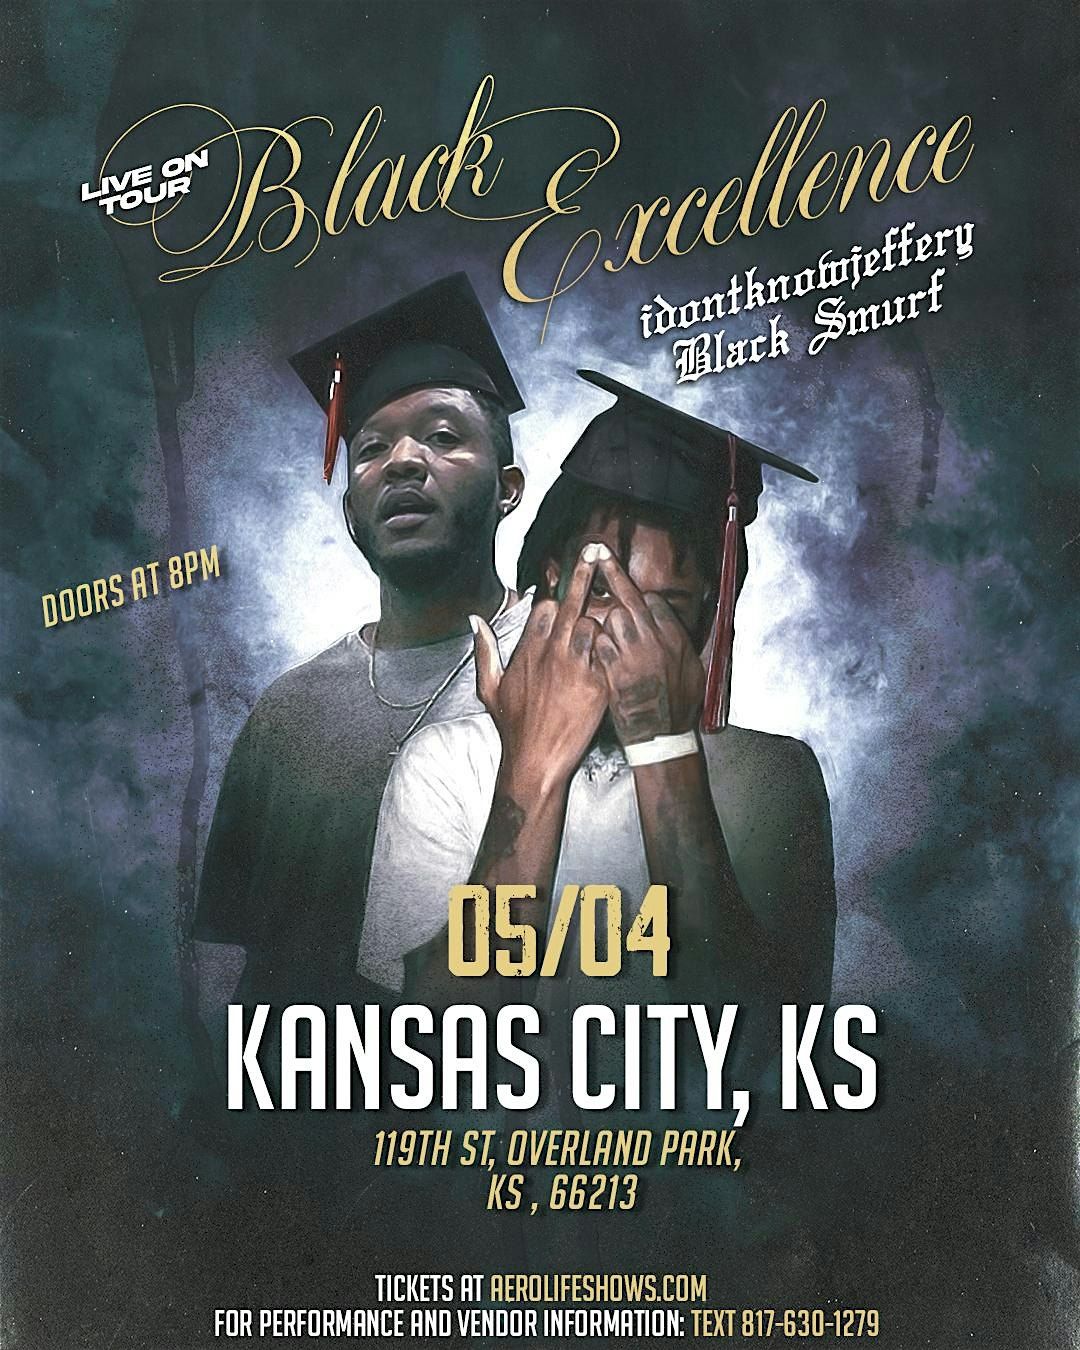 JUNE 28th: IDONTKNOWJEFFERY & Black Smurf Live in Atlanta, GA